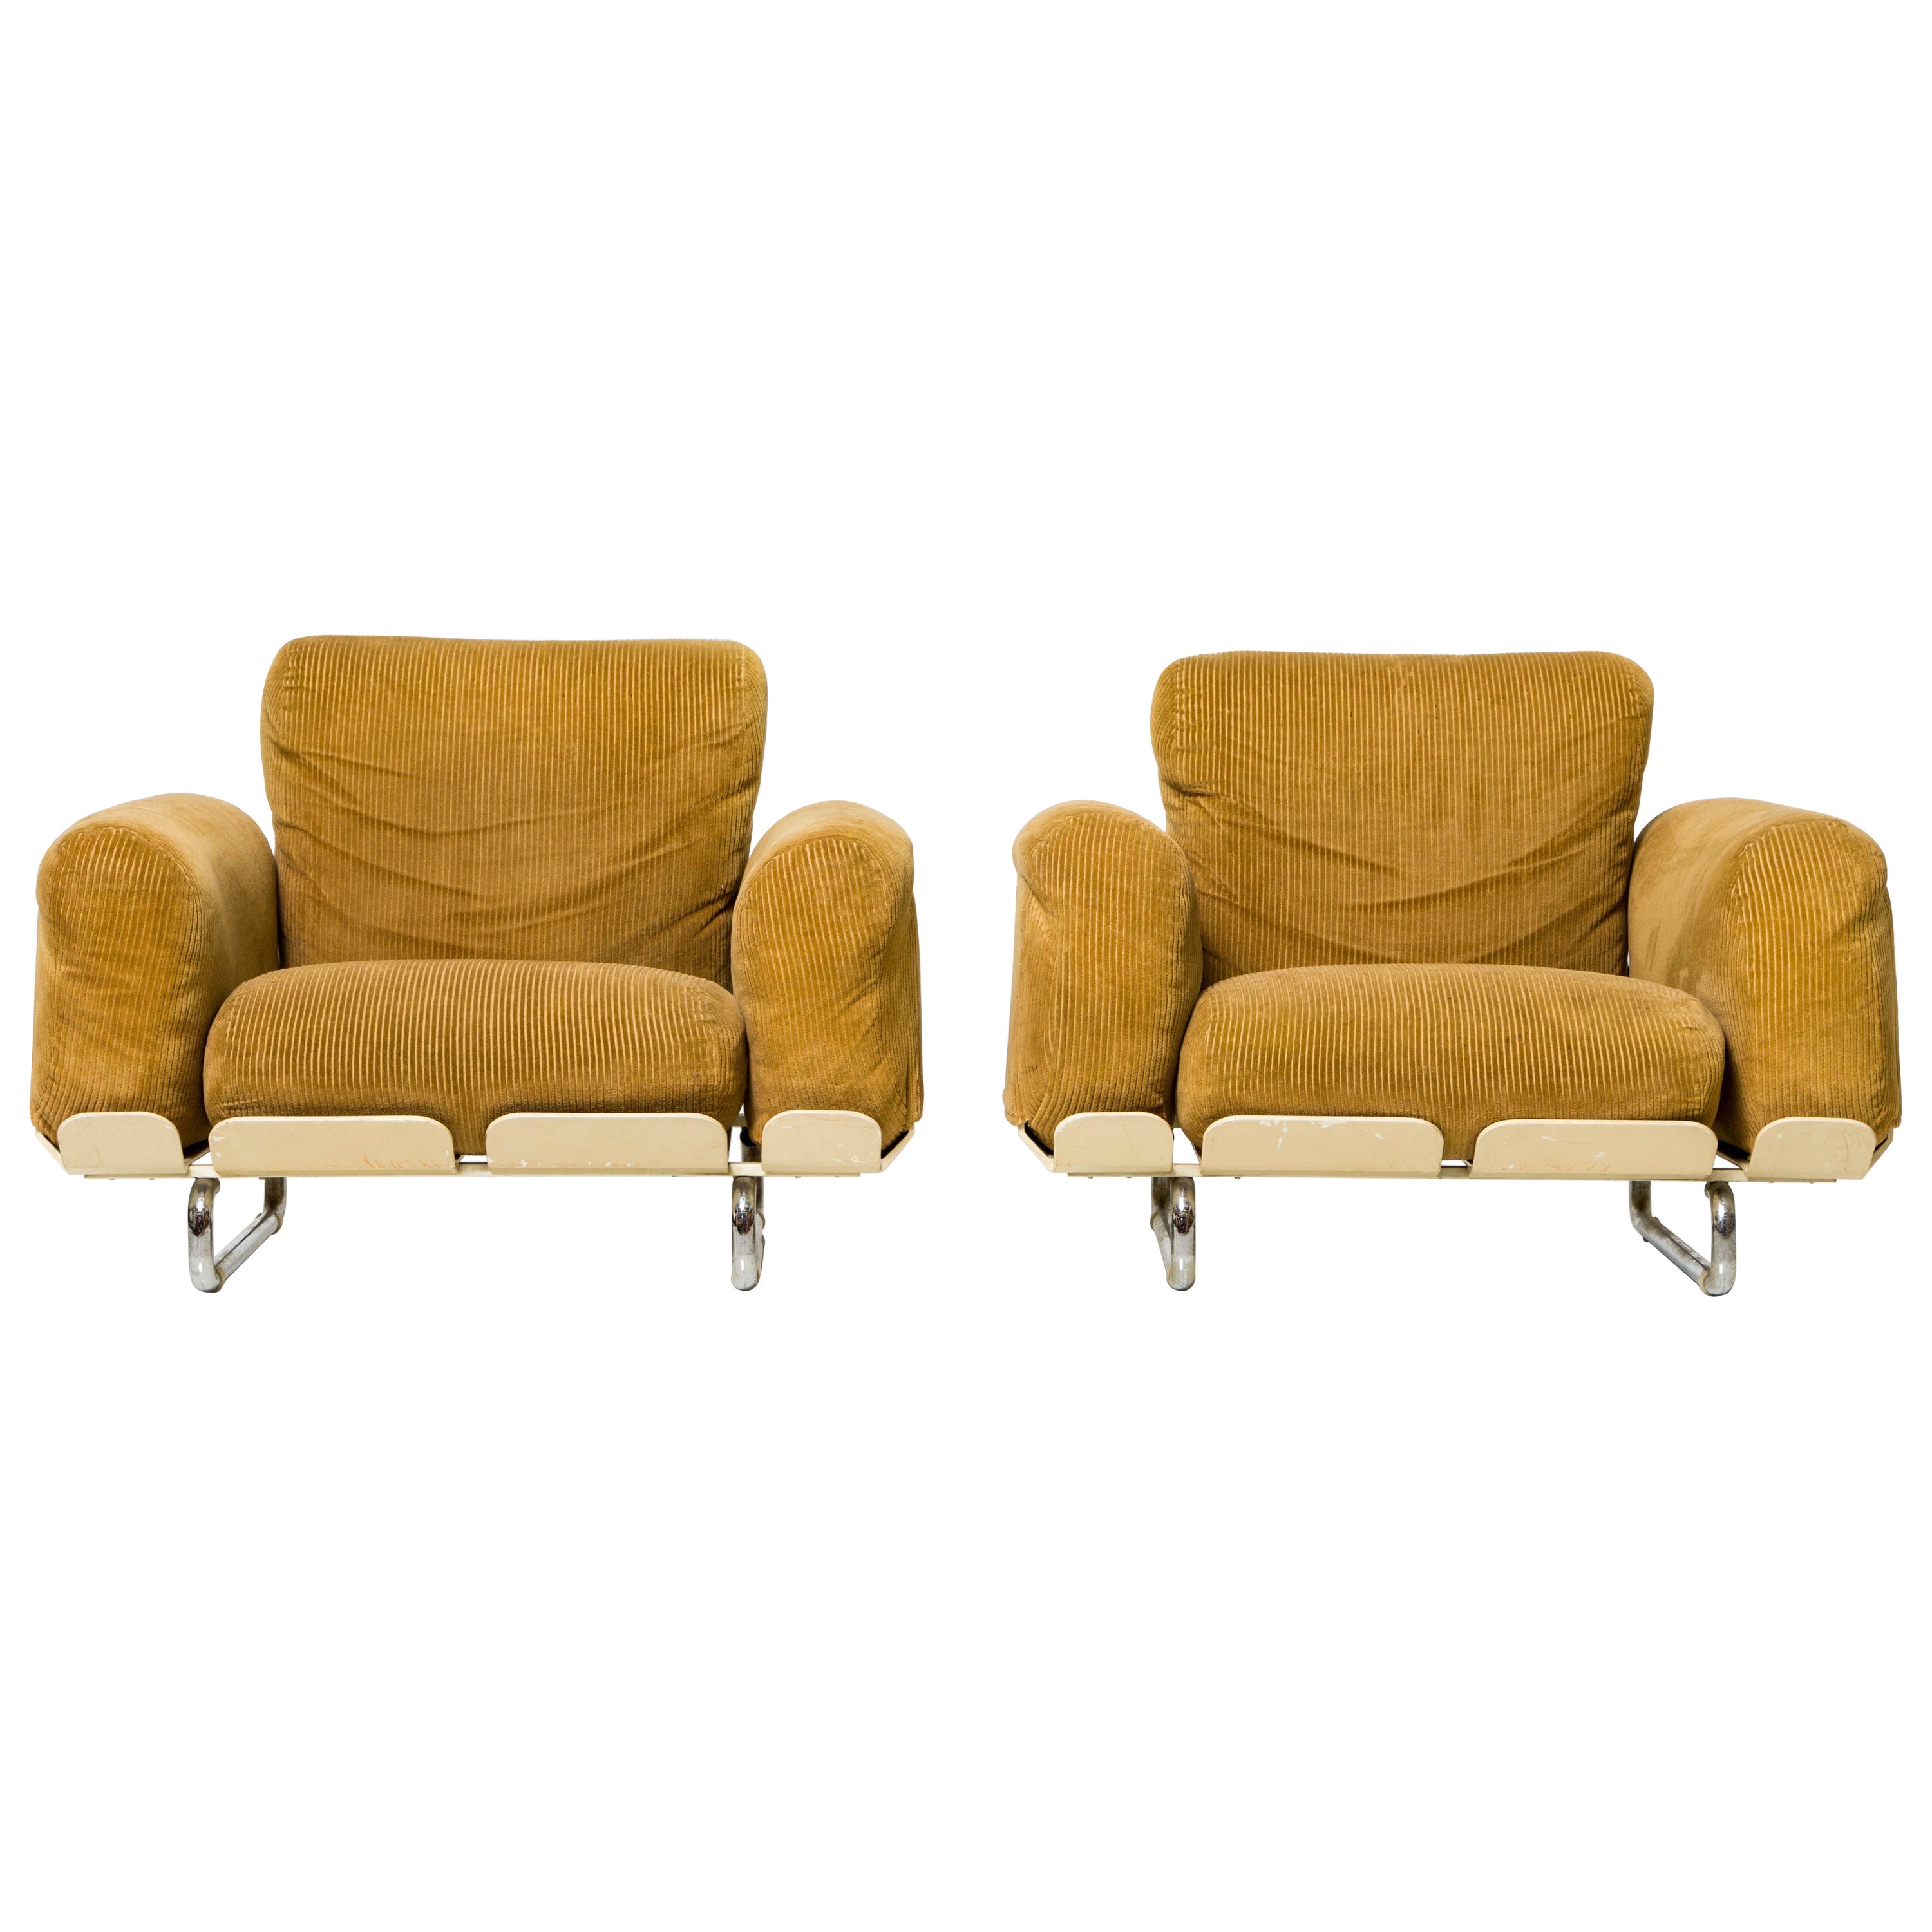 Rare 'Senzafine' Lounge Chairs by Eleonore Riva for Zanotta, 1969, Signed